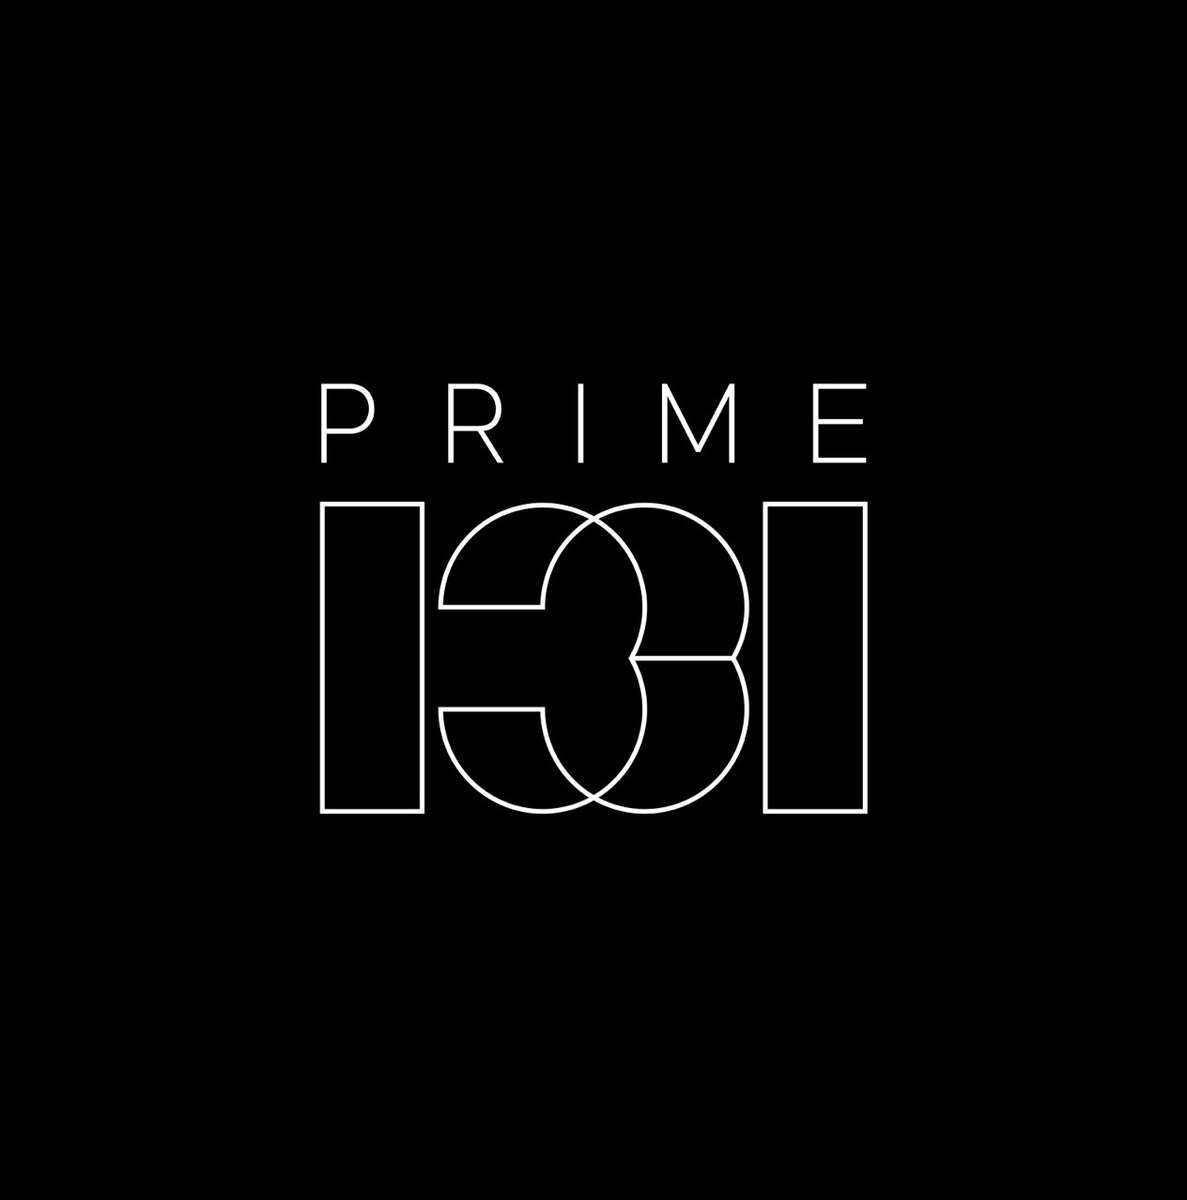 Prime 131 logo